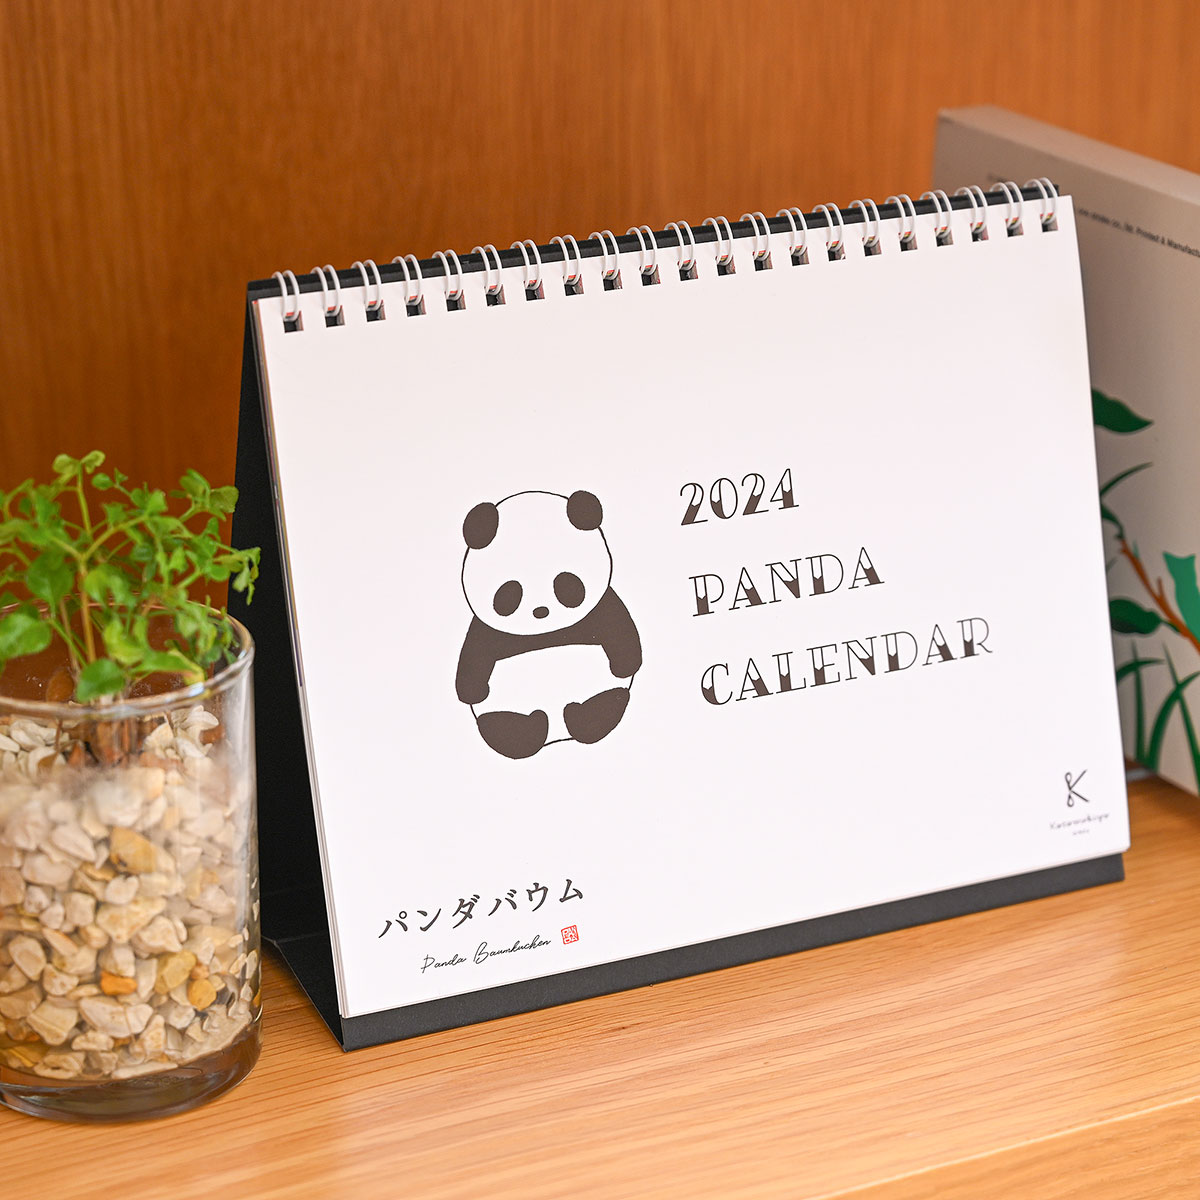 『パンダカレンダー 2024』9/21より発売決定！